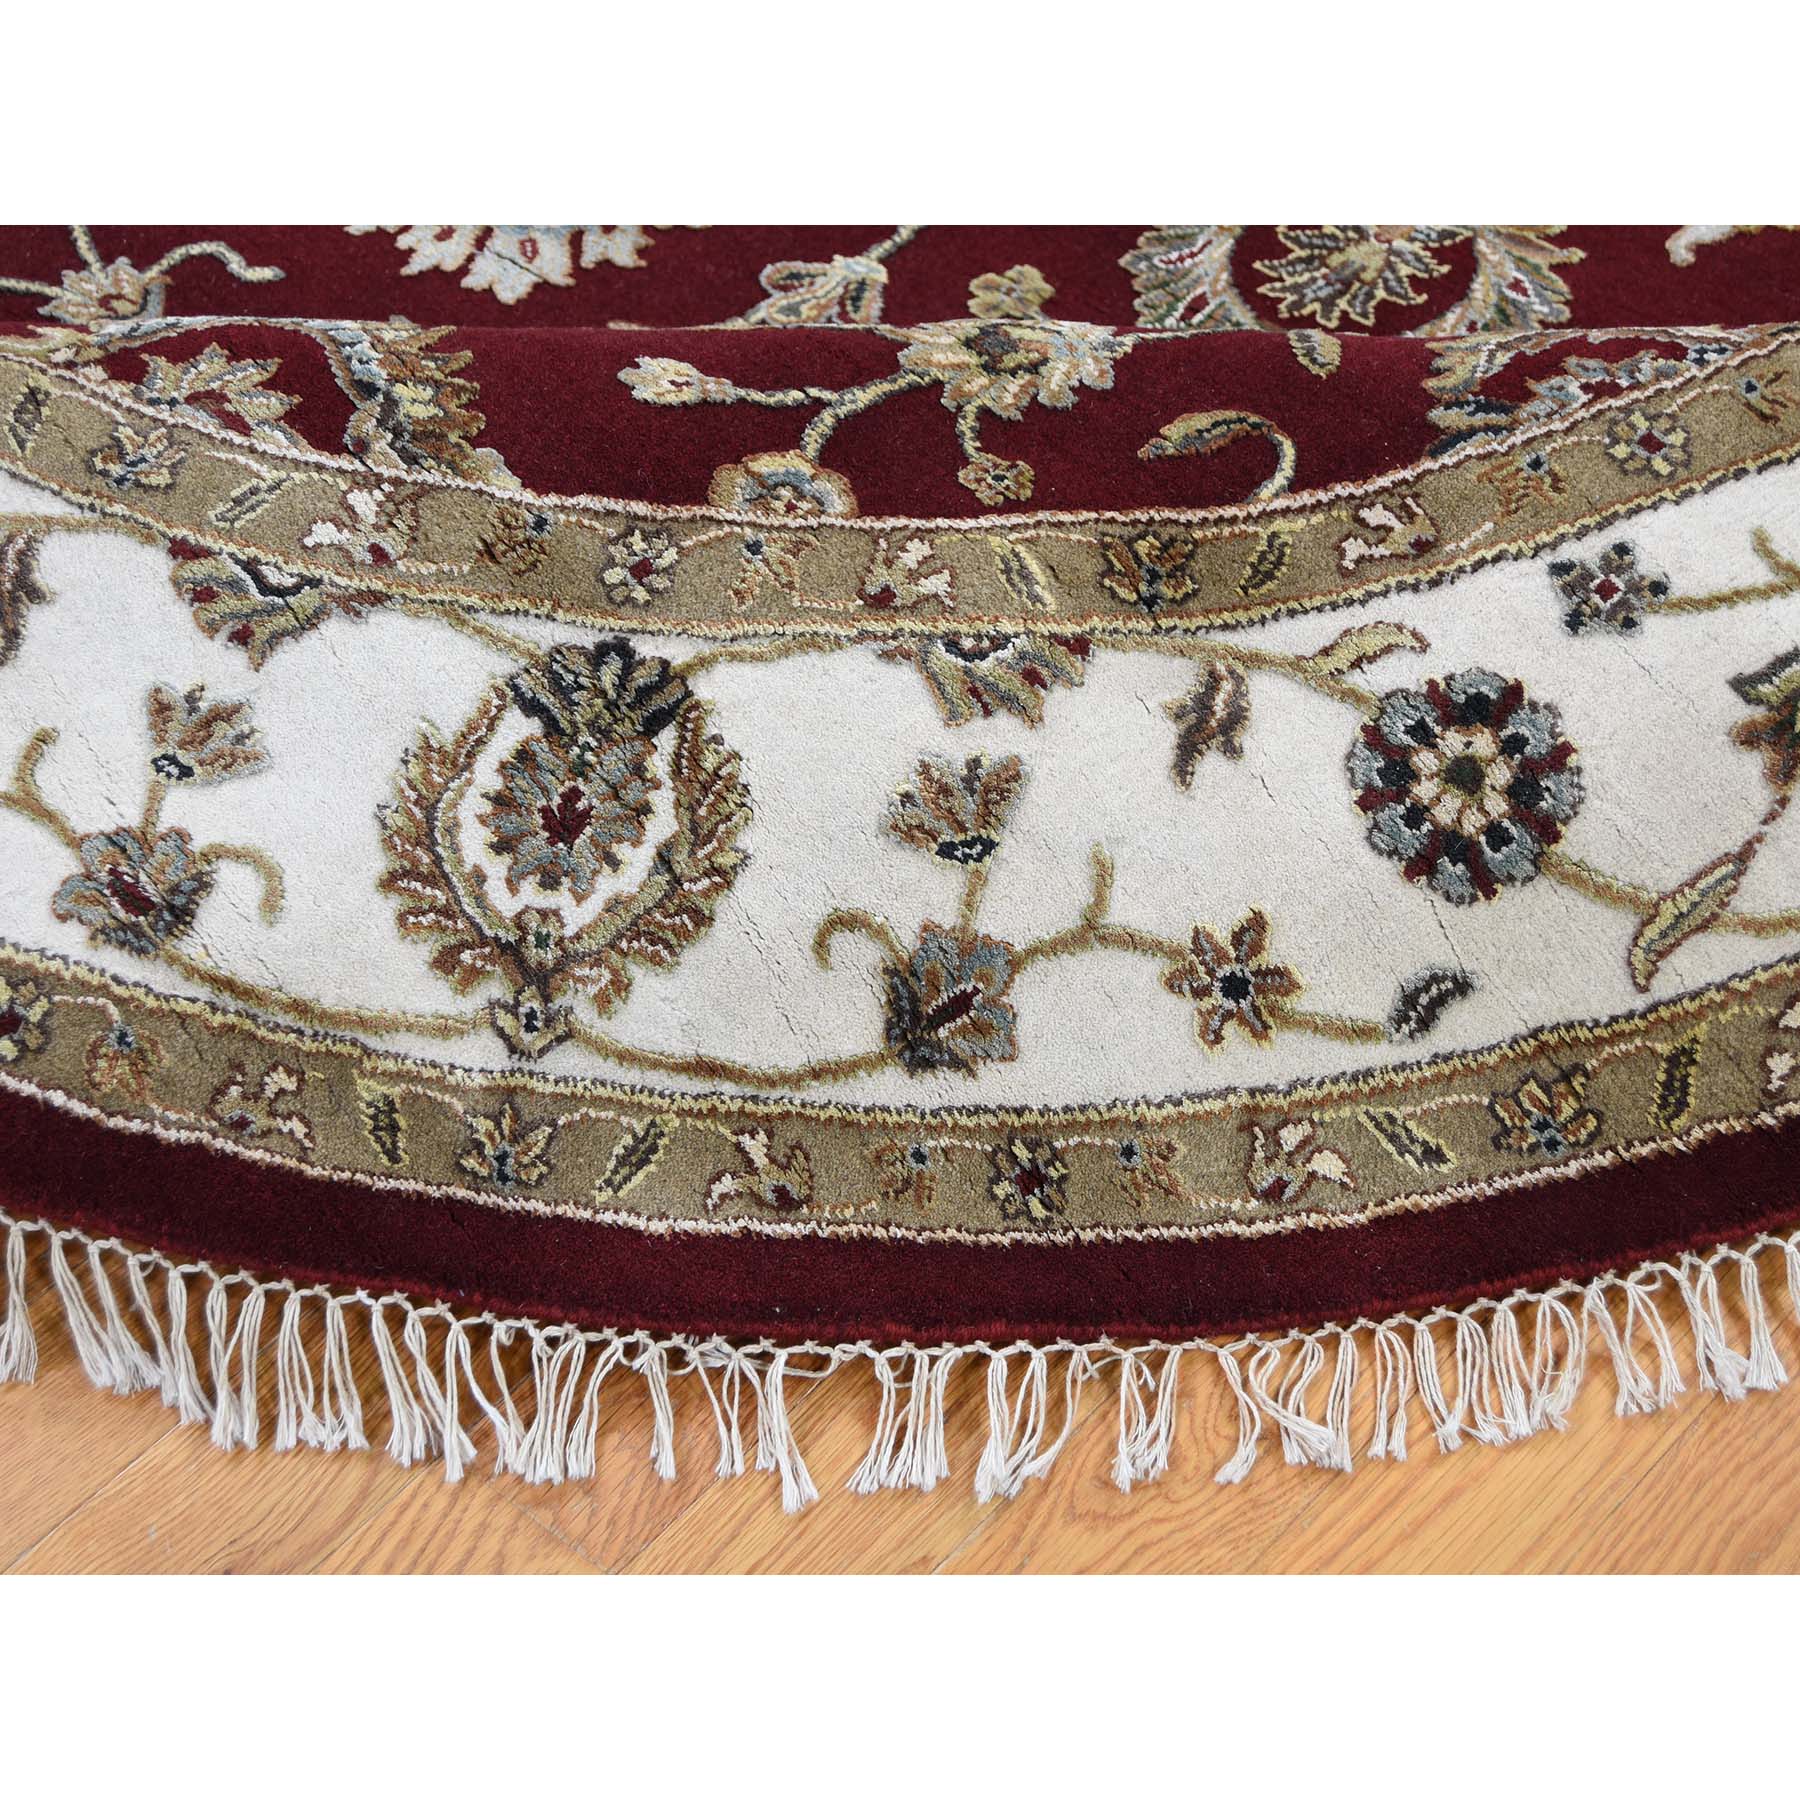 7'2"x7'2" Half Wool and Half Silk Burgundy Rajasthan Round Hand Woven Oriental Rug 